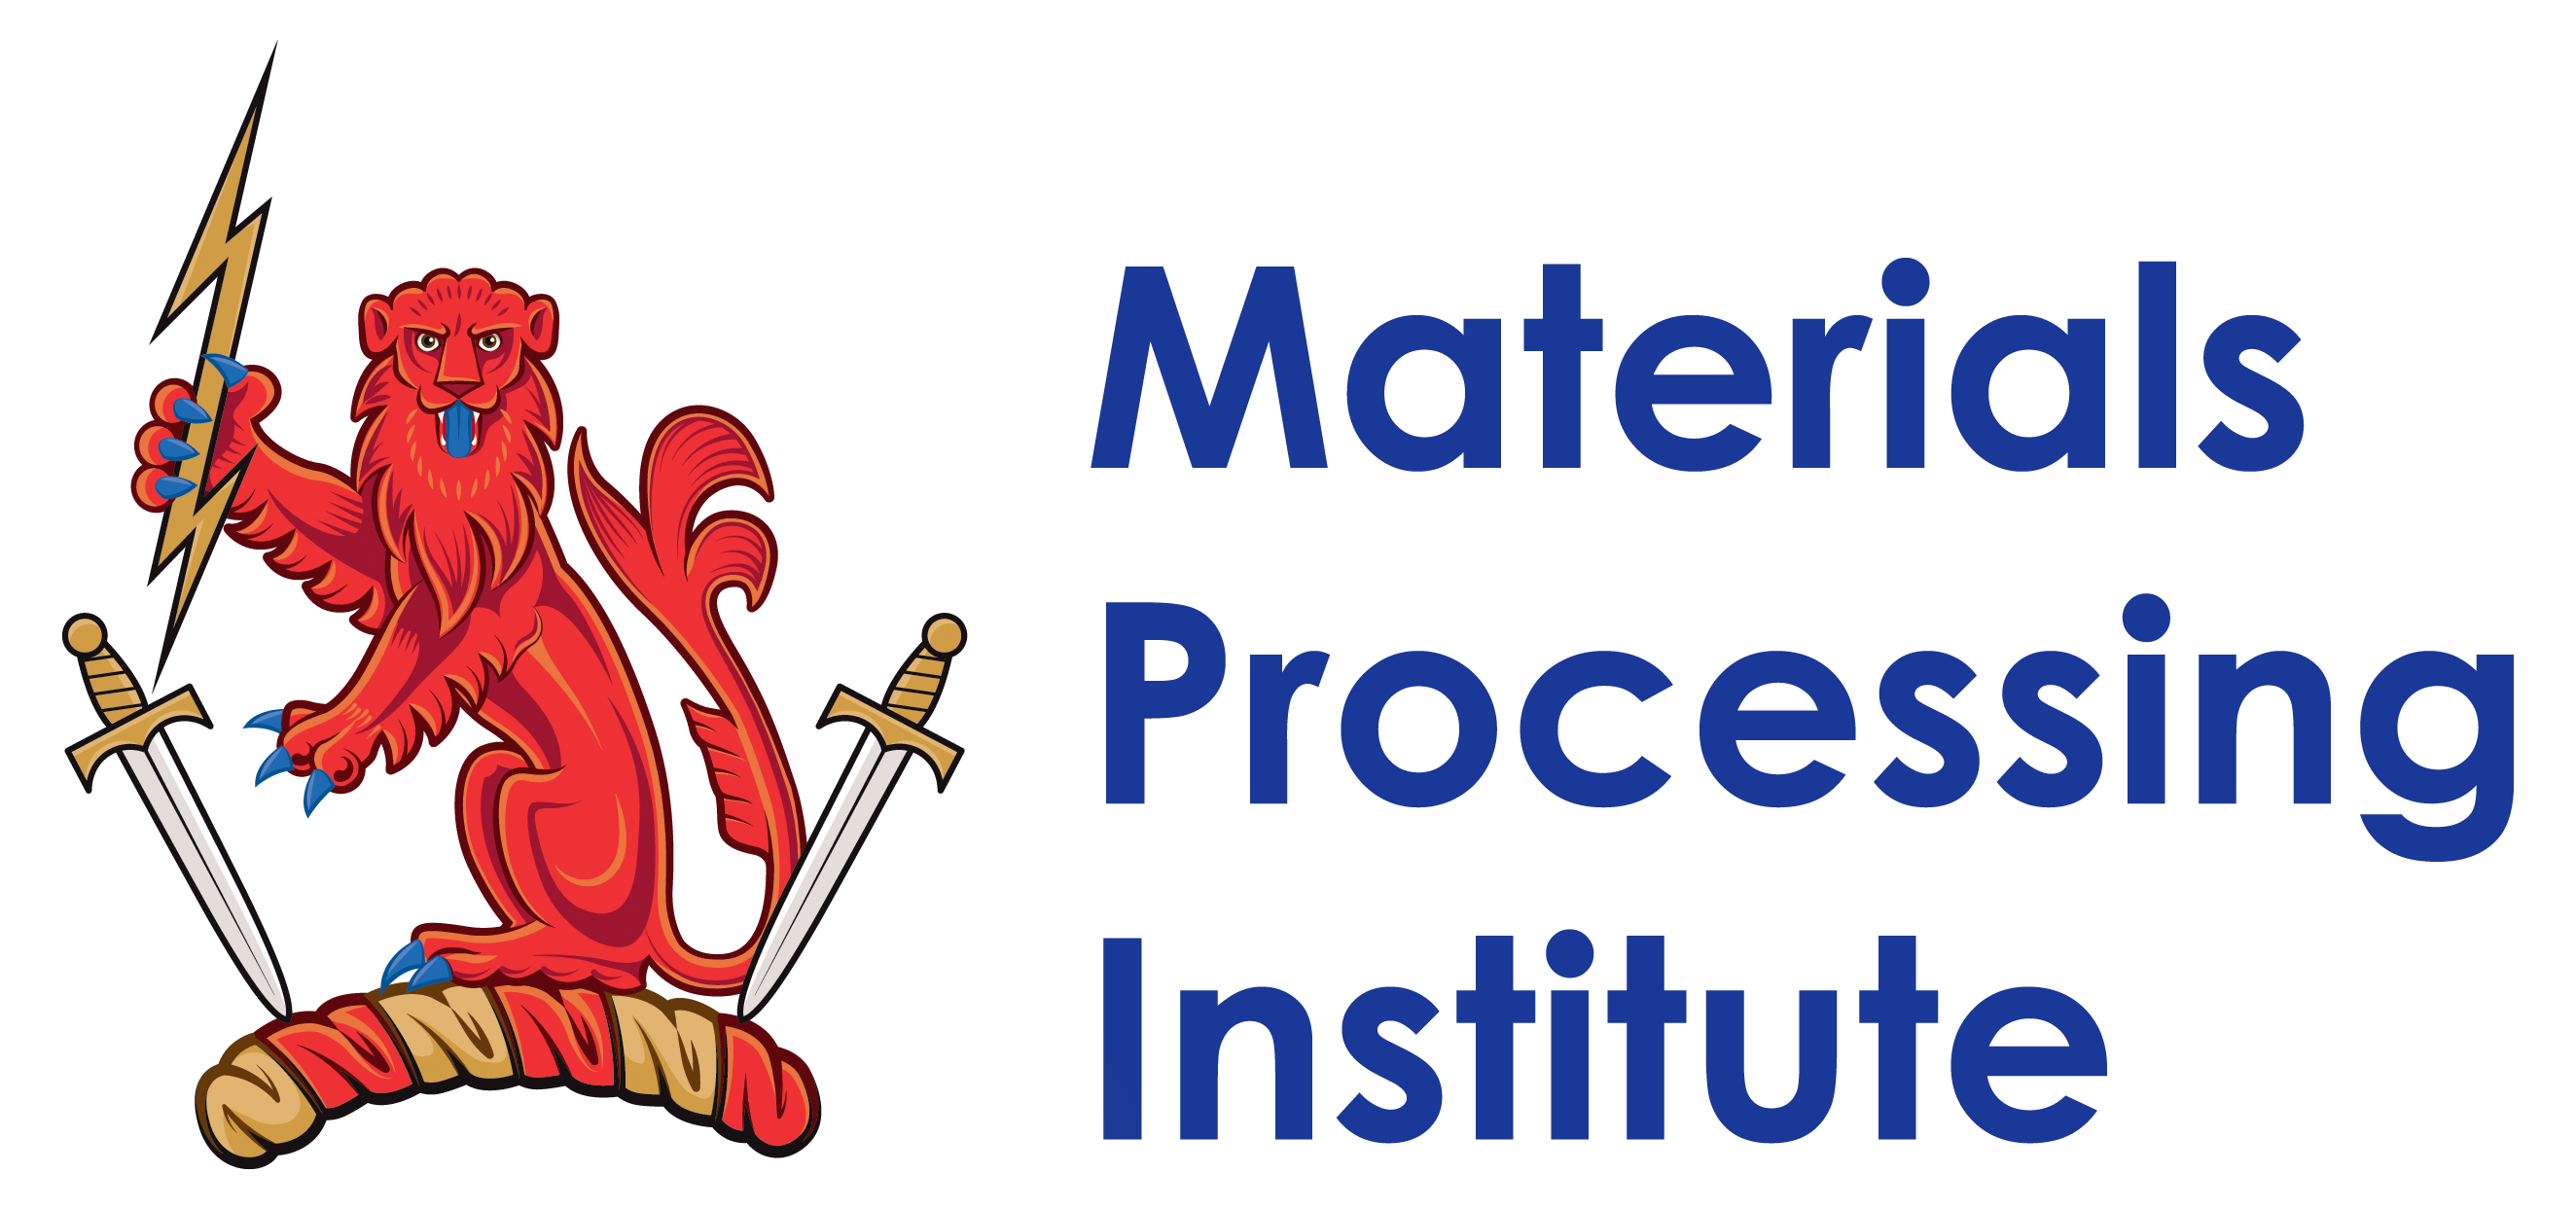 logo for Materials Processing Institute